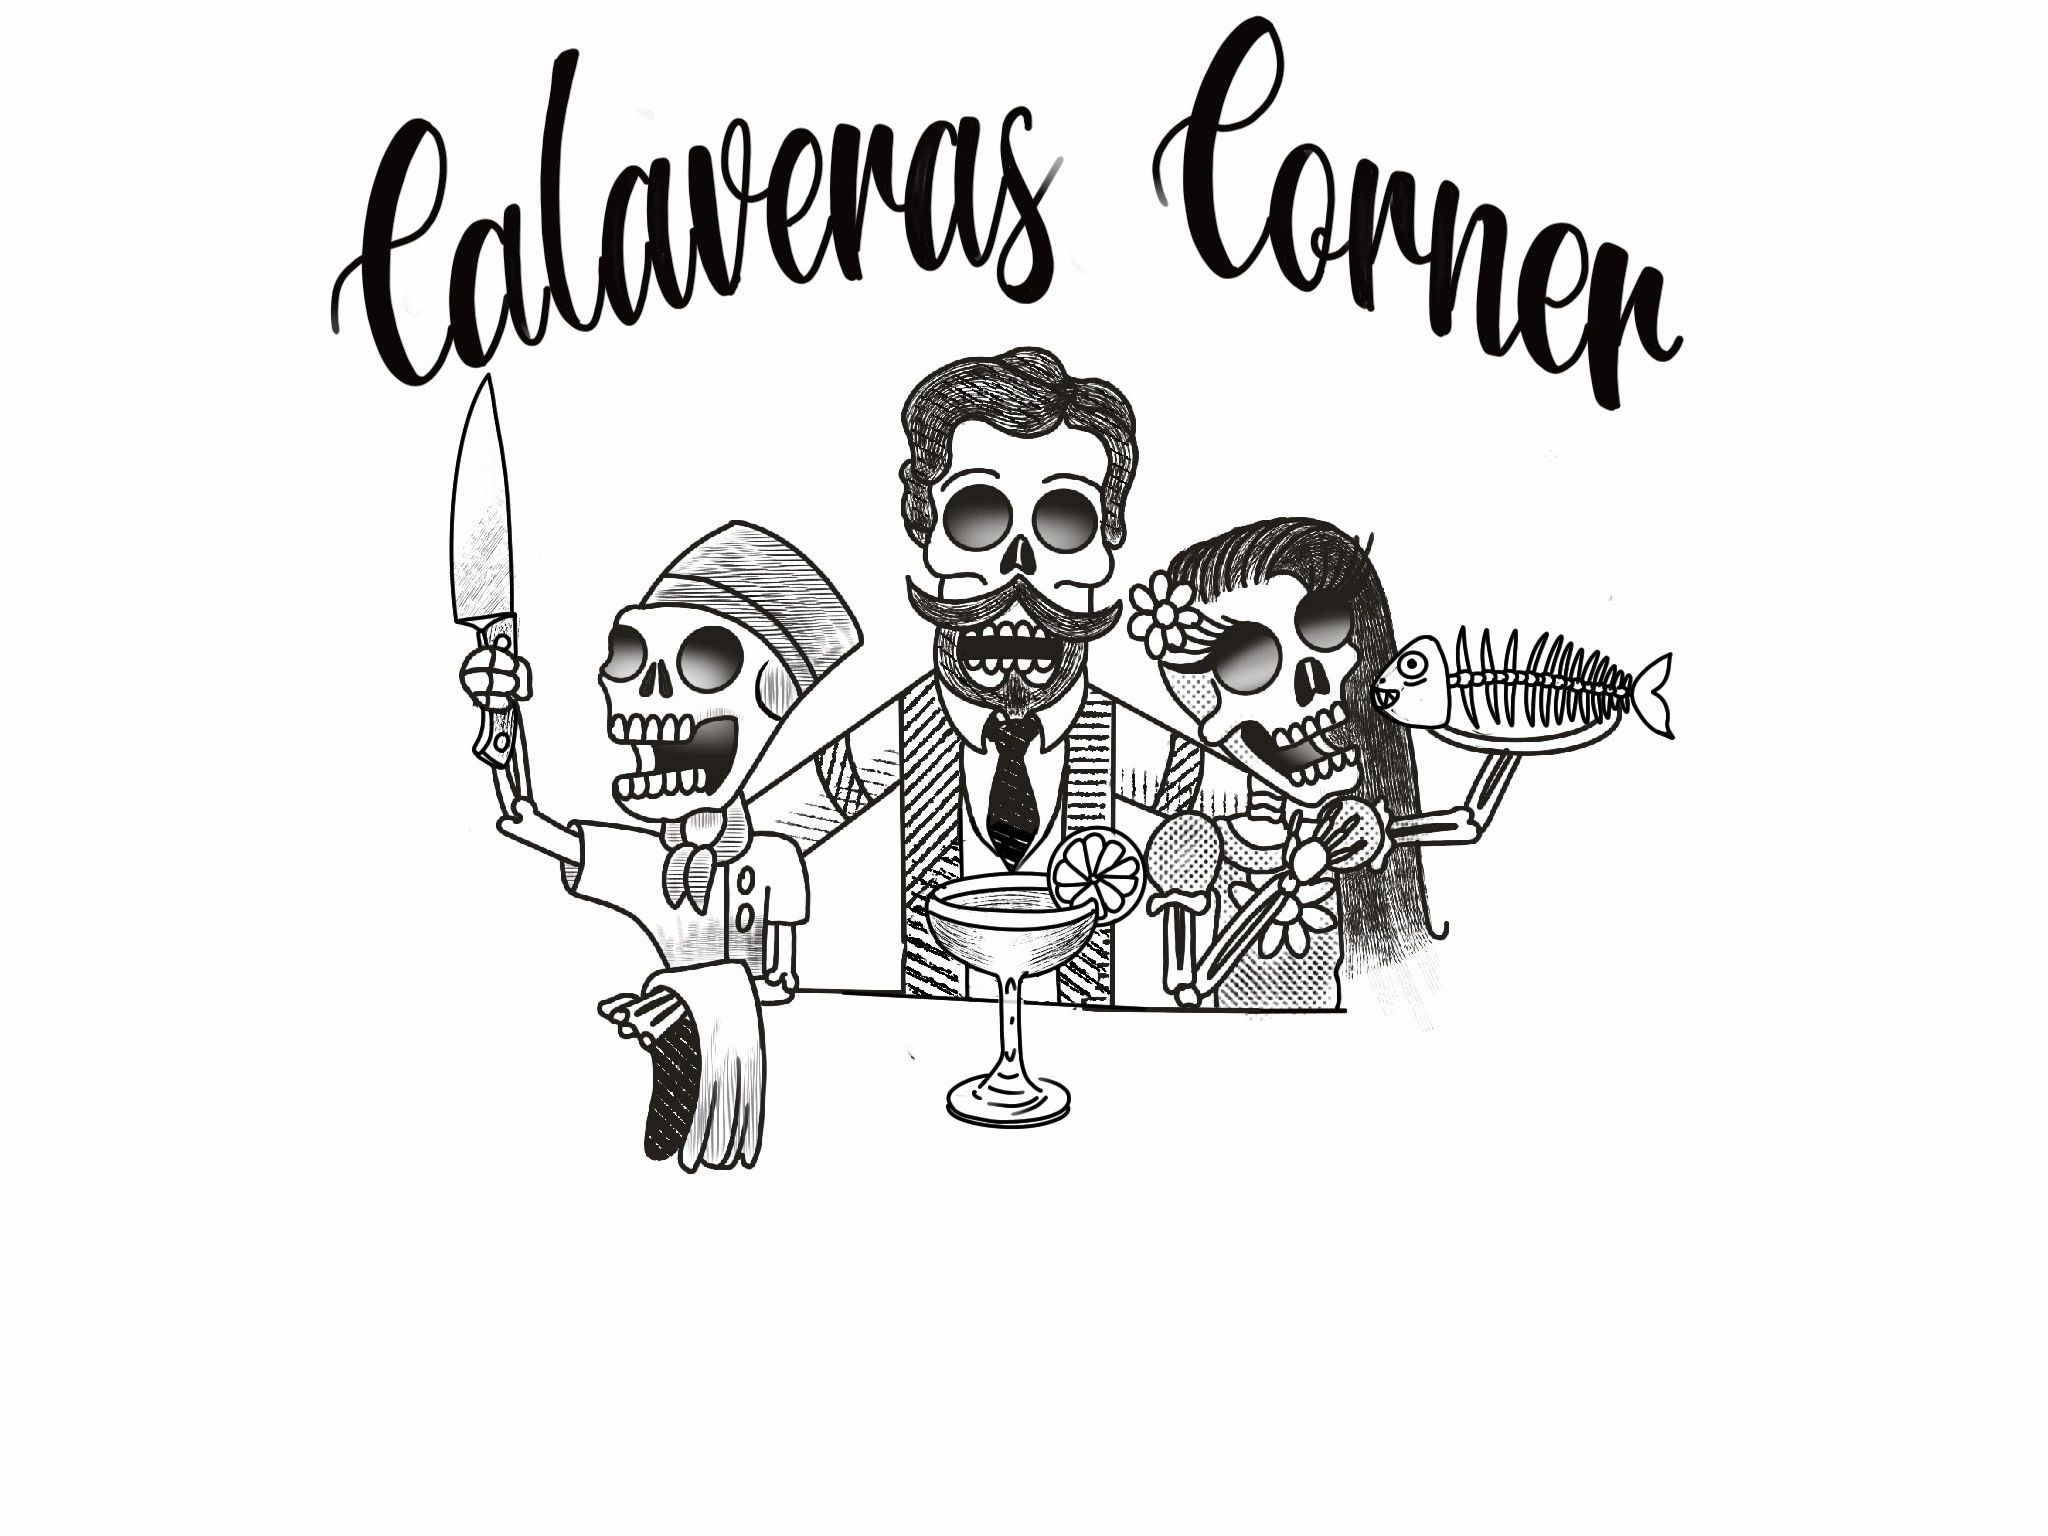 Calaveras Corner - Best Mexican Food, Birria Tacos